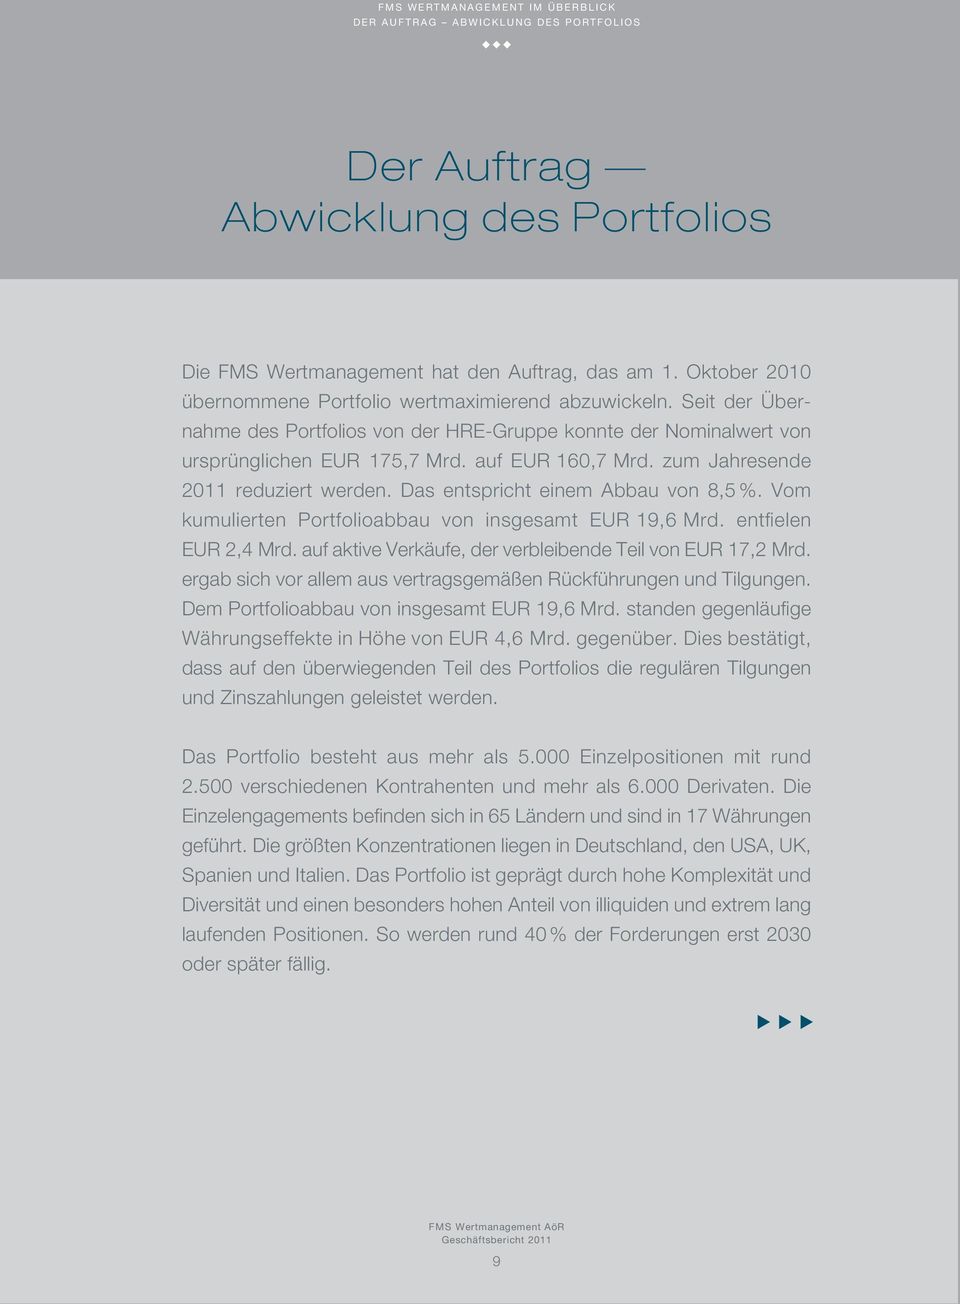 am 1. Oktober 2010 über nommene Portfolio wertmaximierend abzuwickeln. Seit der Übernahme des Portfolios von der HRE-Gruppe konnte der Nominalwert von ursprünglichen EUR 175,7 Mrd. auf EUR 160,7 Mrd.